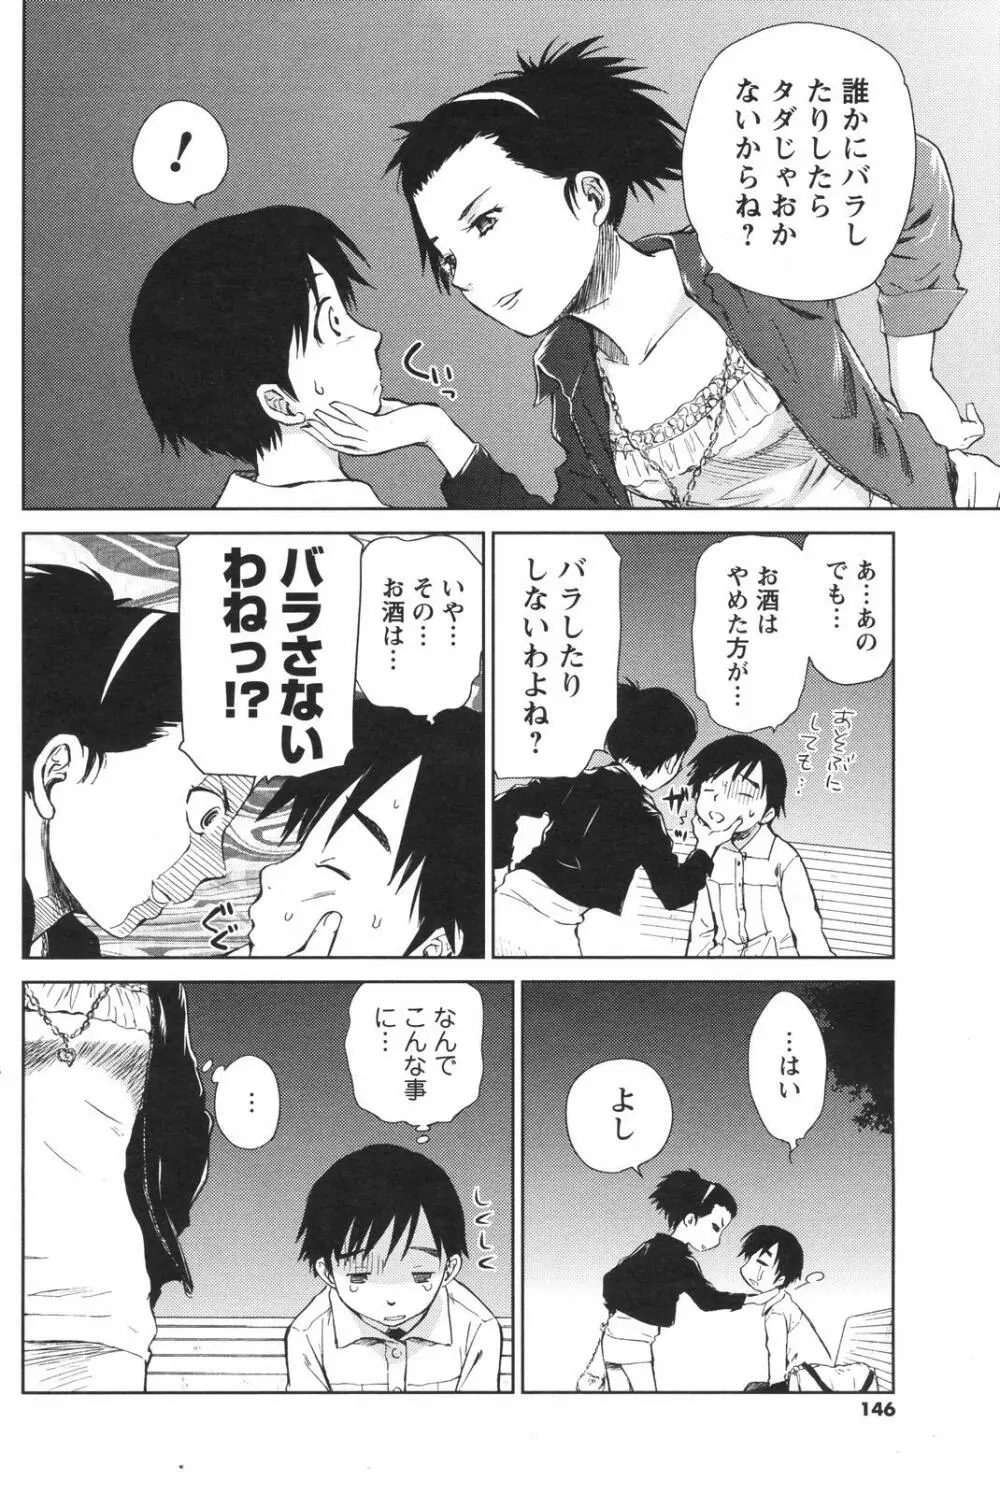 メンズヤングスペシャルIKAZUCHI雷 Vol.4 2007年12月号増刊 146ページ